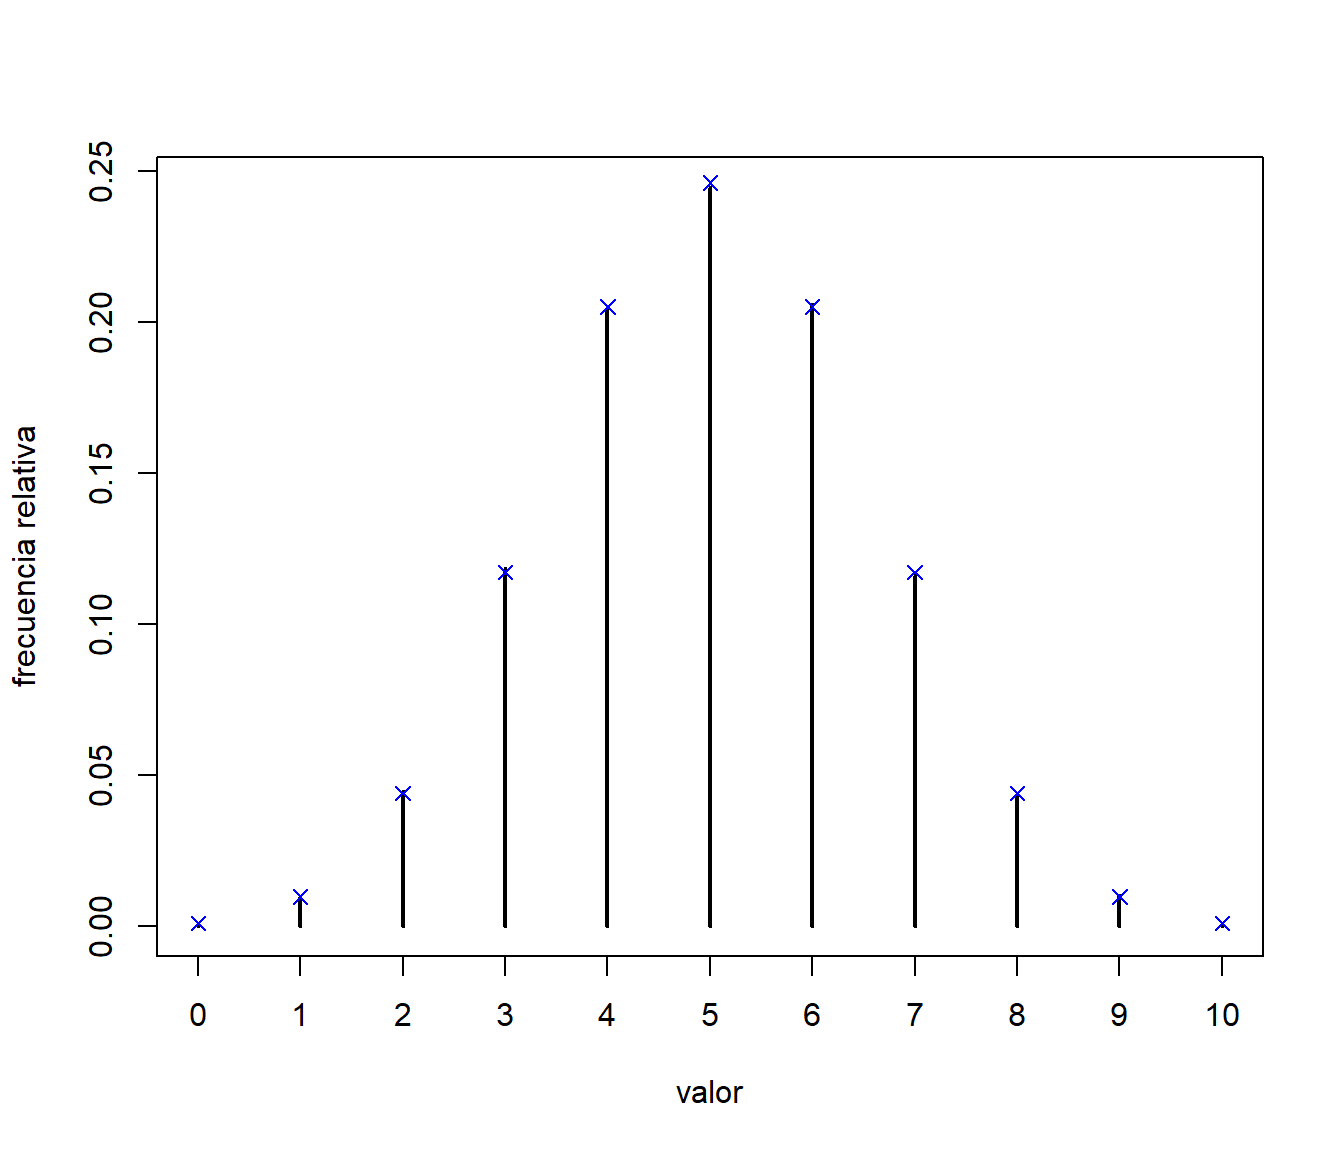 Comparación de las frecuencias relativas de los valores generados, mediante el método de la transformación cuantil, con las probabilidades teóricas.